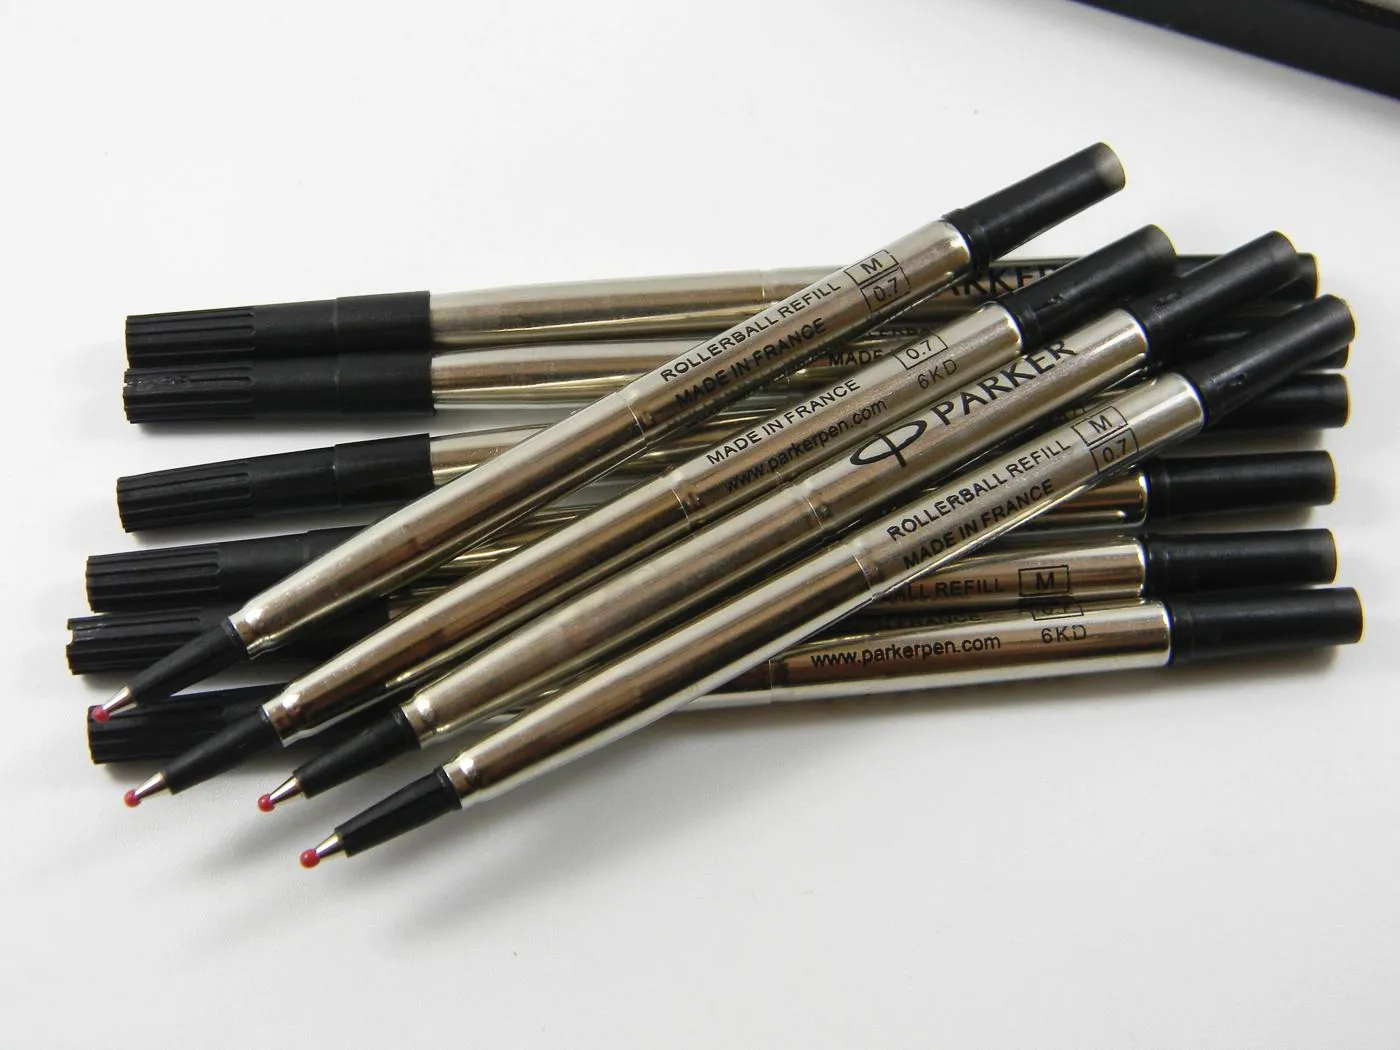 10 sztuk metalowe wkłady do długopisów Parker niebieski czarny dobrej jakości 0.7mm